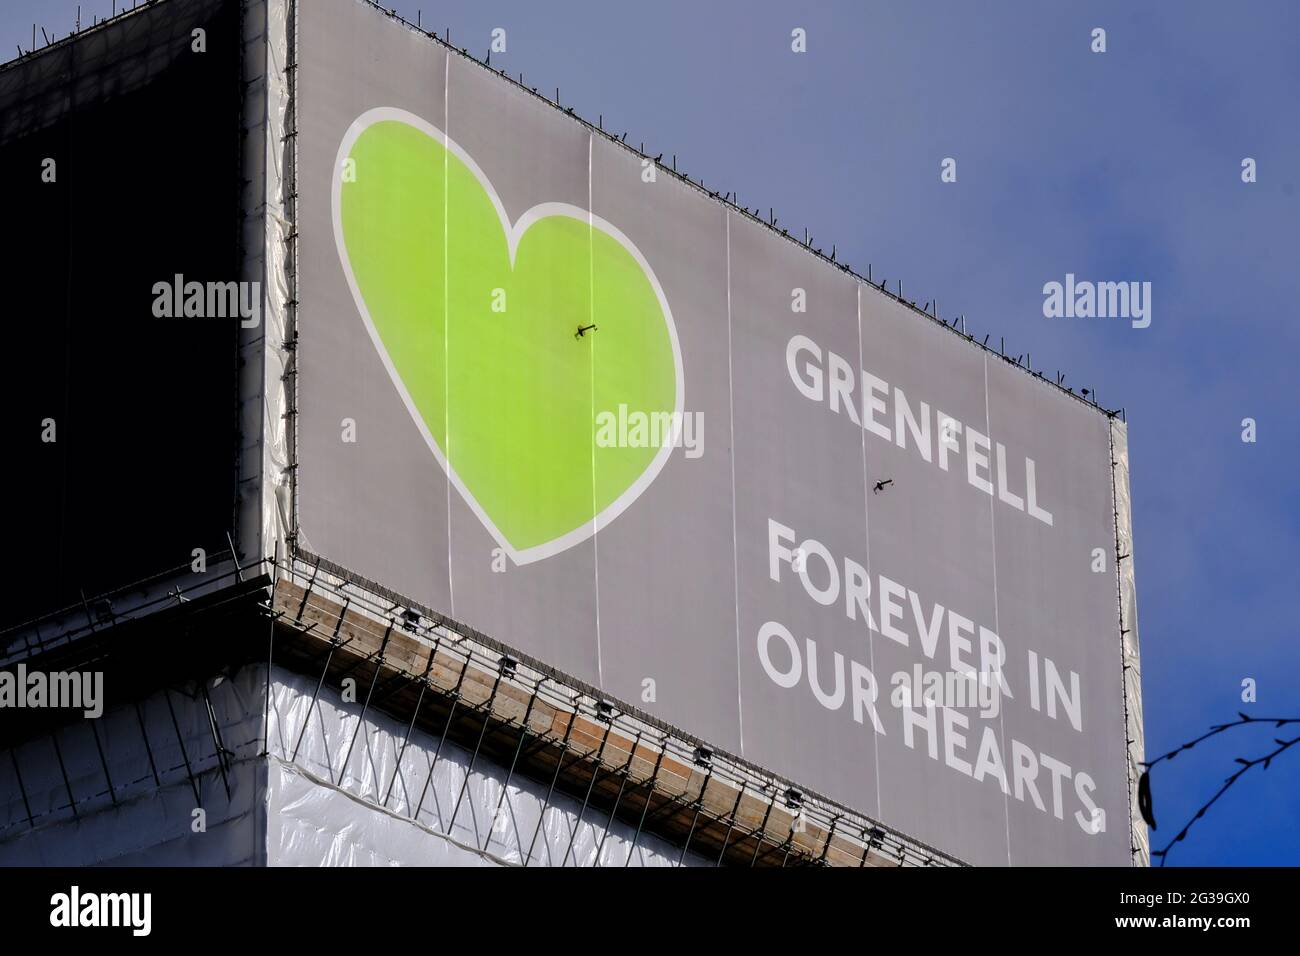 Die Plane bedeckt die ausgebrannte Muschel des Grenfell-Turms mit dem grünen Herzen, das zum Symbol für alle wurde, die von der Tragödie betroffen waren und 72 Menschenleben verloren Stockfoto